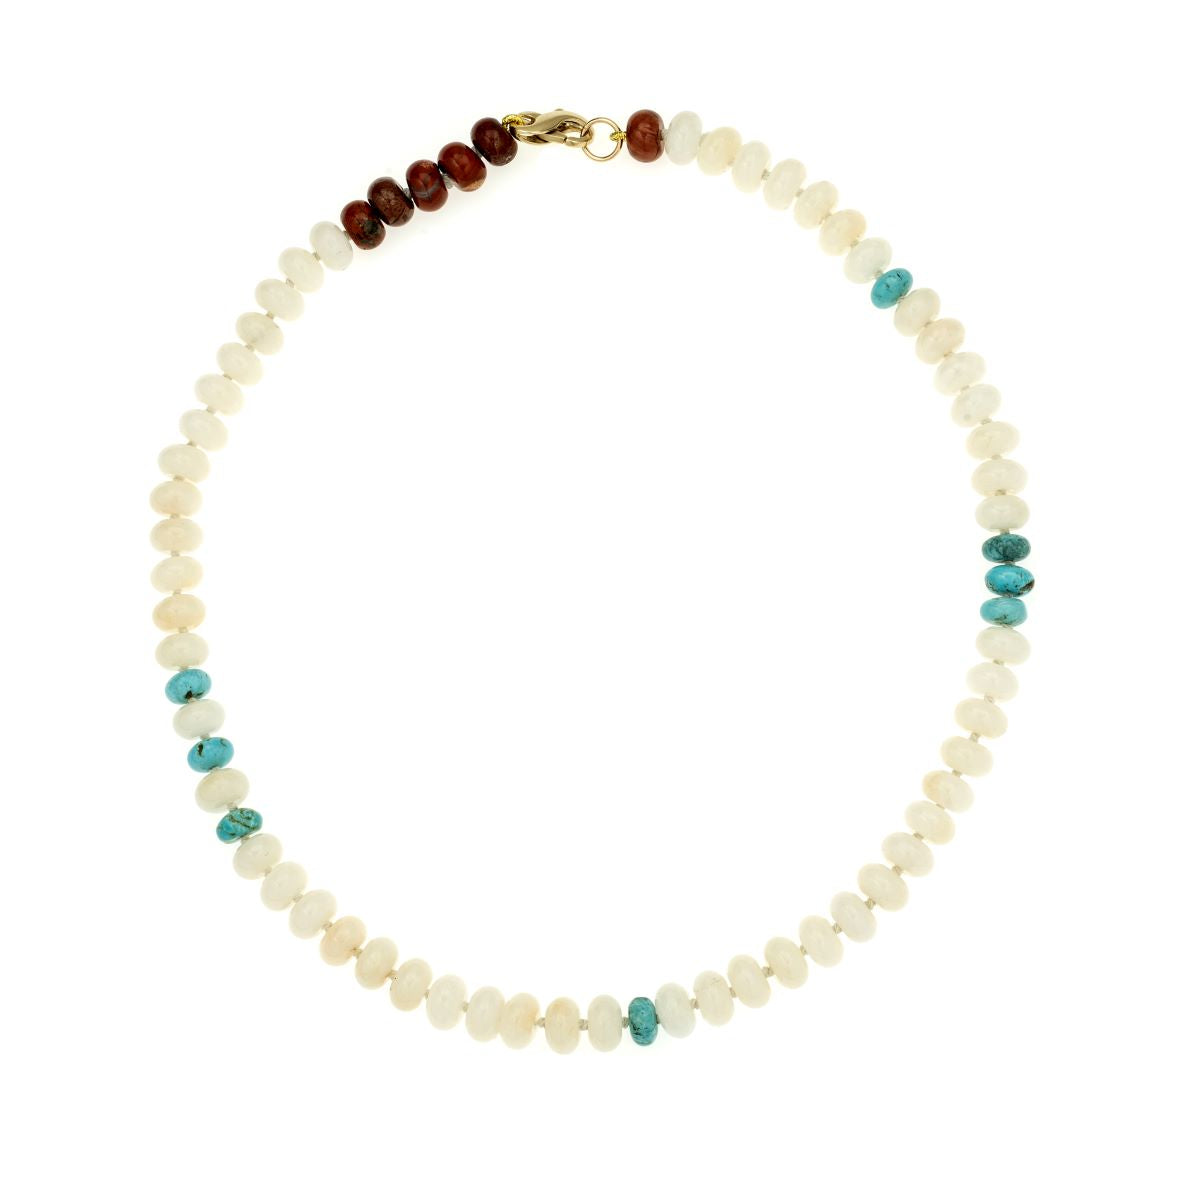 Ivory Jade and Turquoise Gemstone Necklace